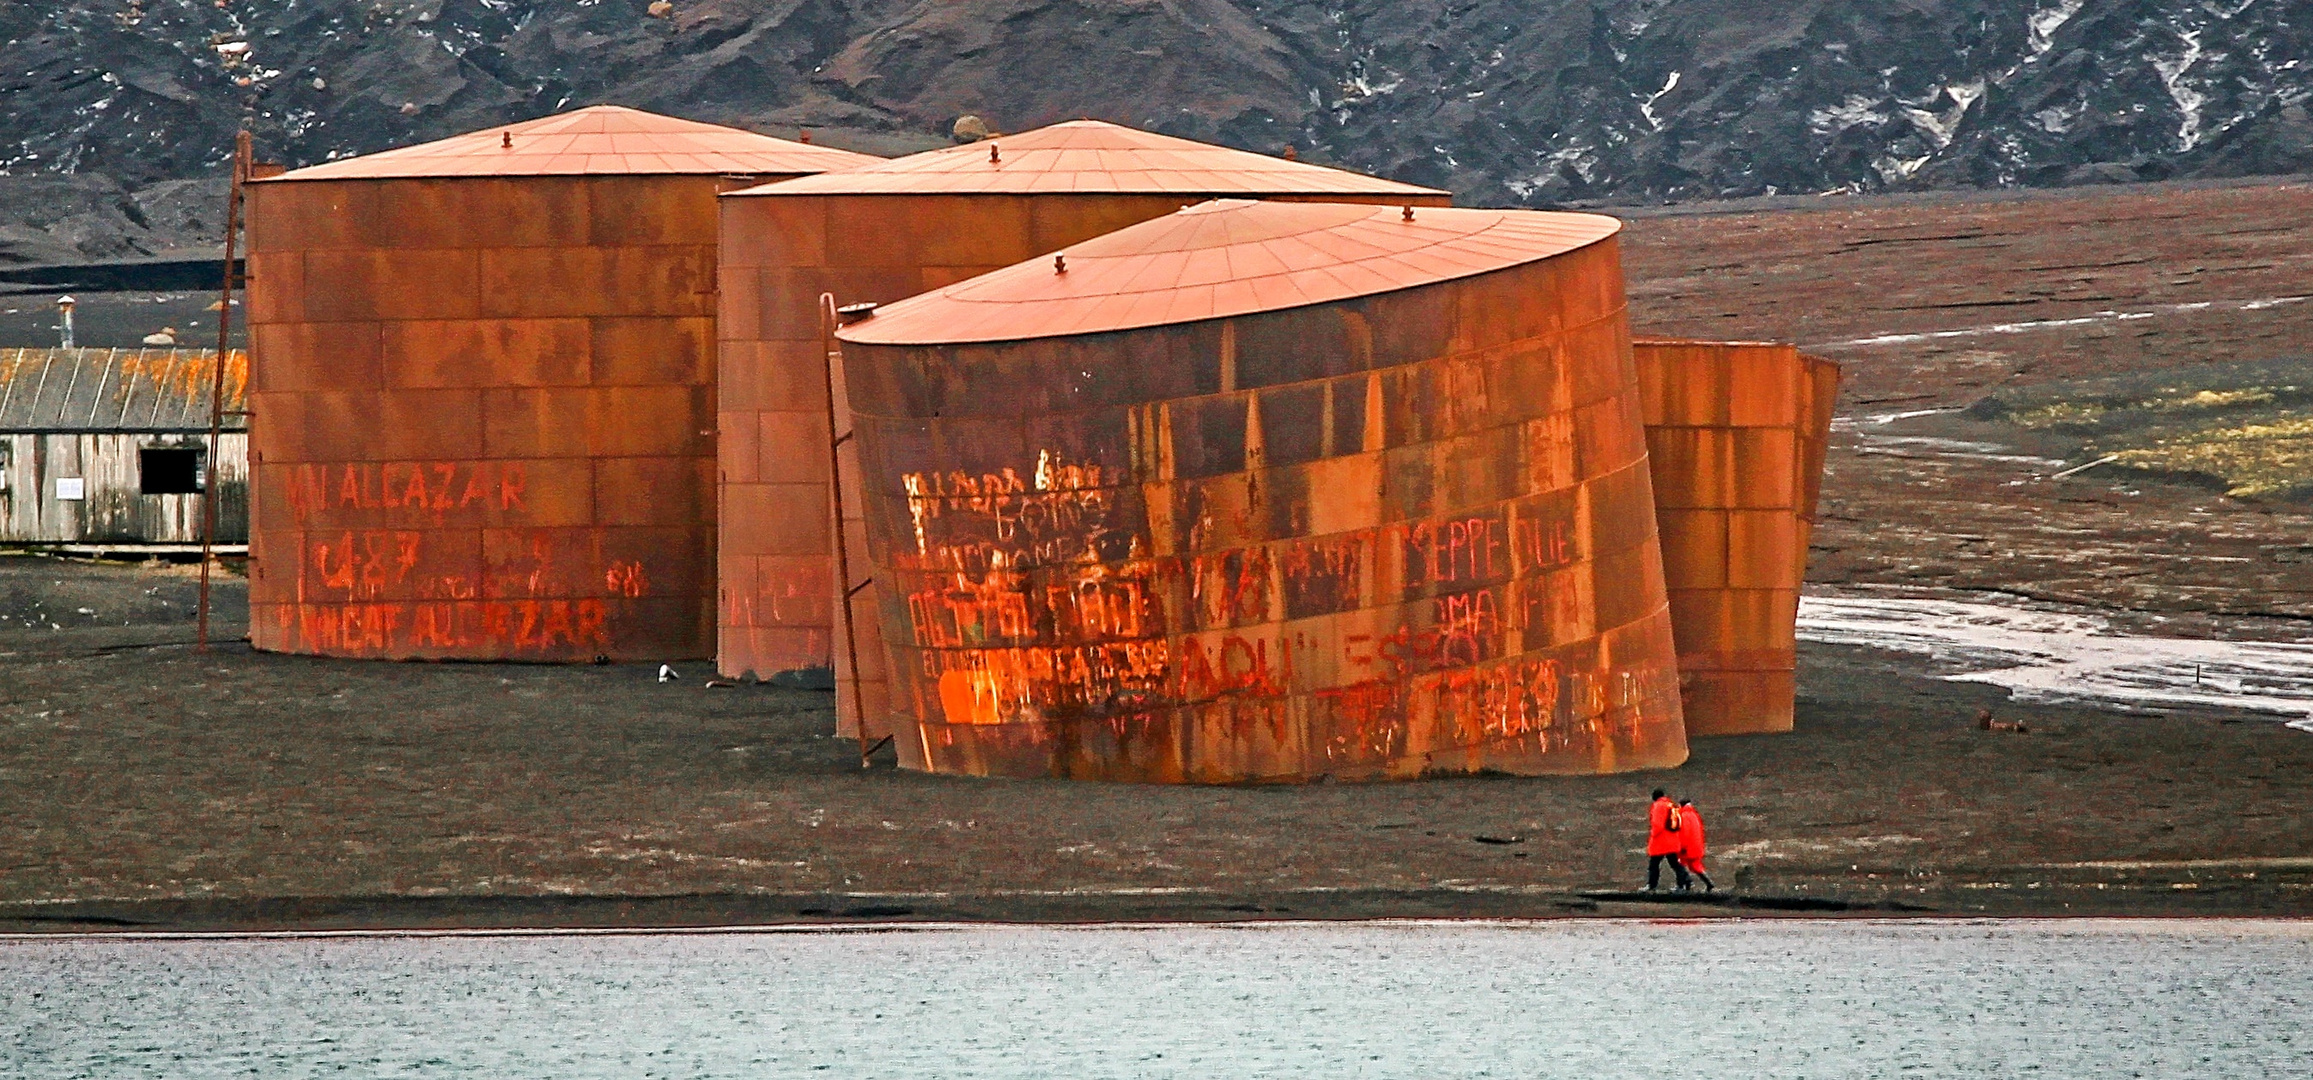 Verlassene Walfangstation auf Dezeption Island